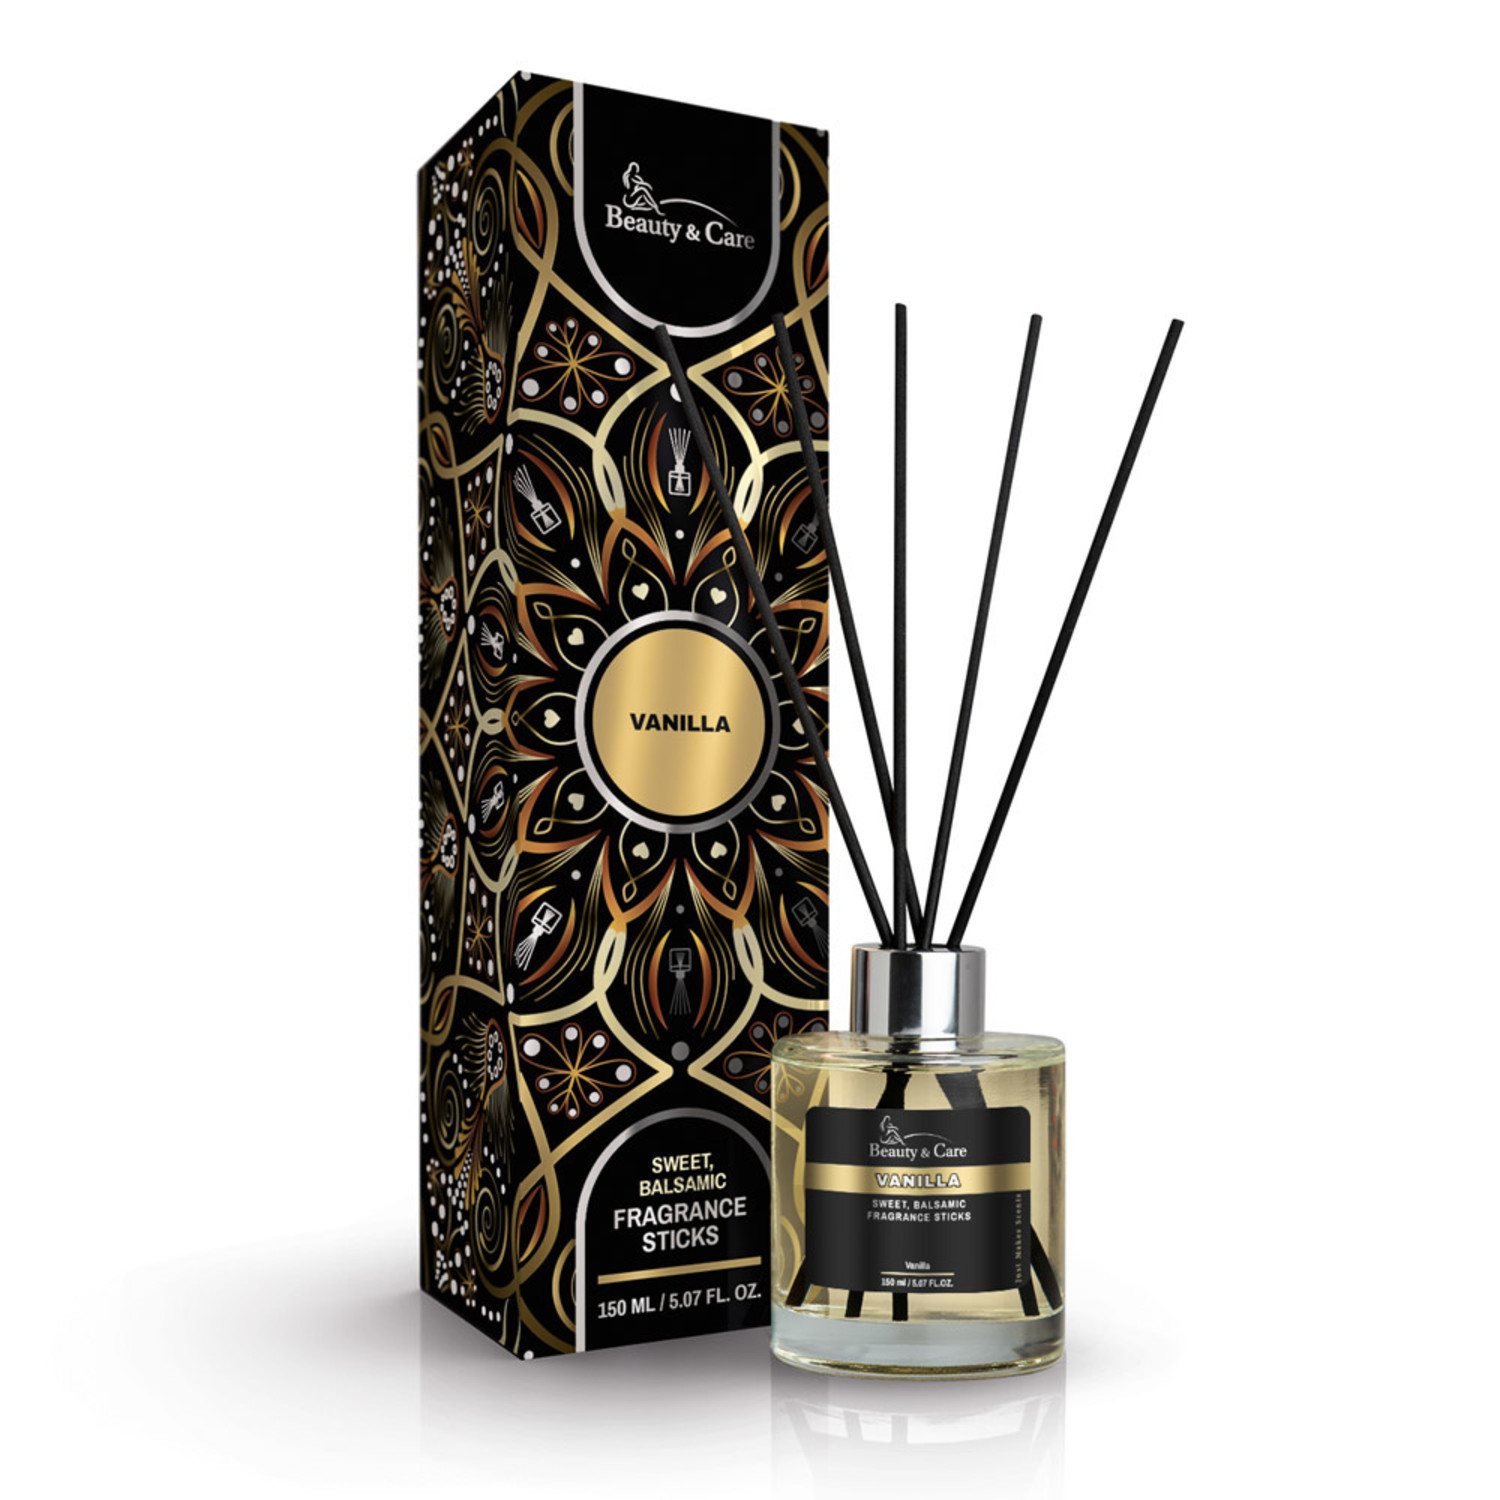 Bâtonnets de parfum Vanille en coffret cadeau - Beauty & Care BV